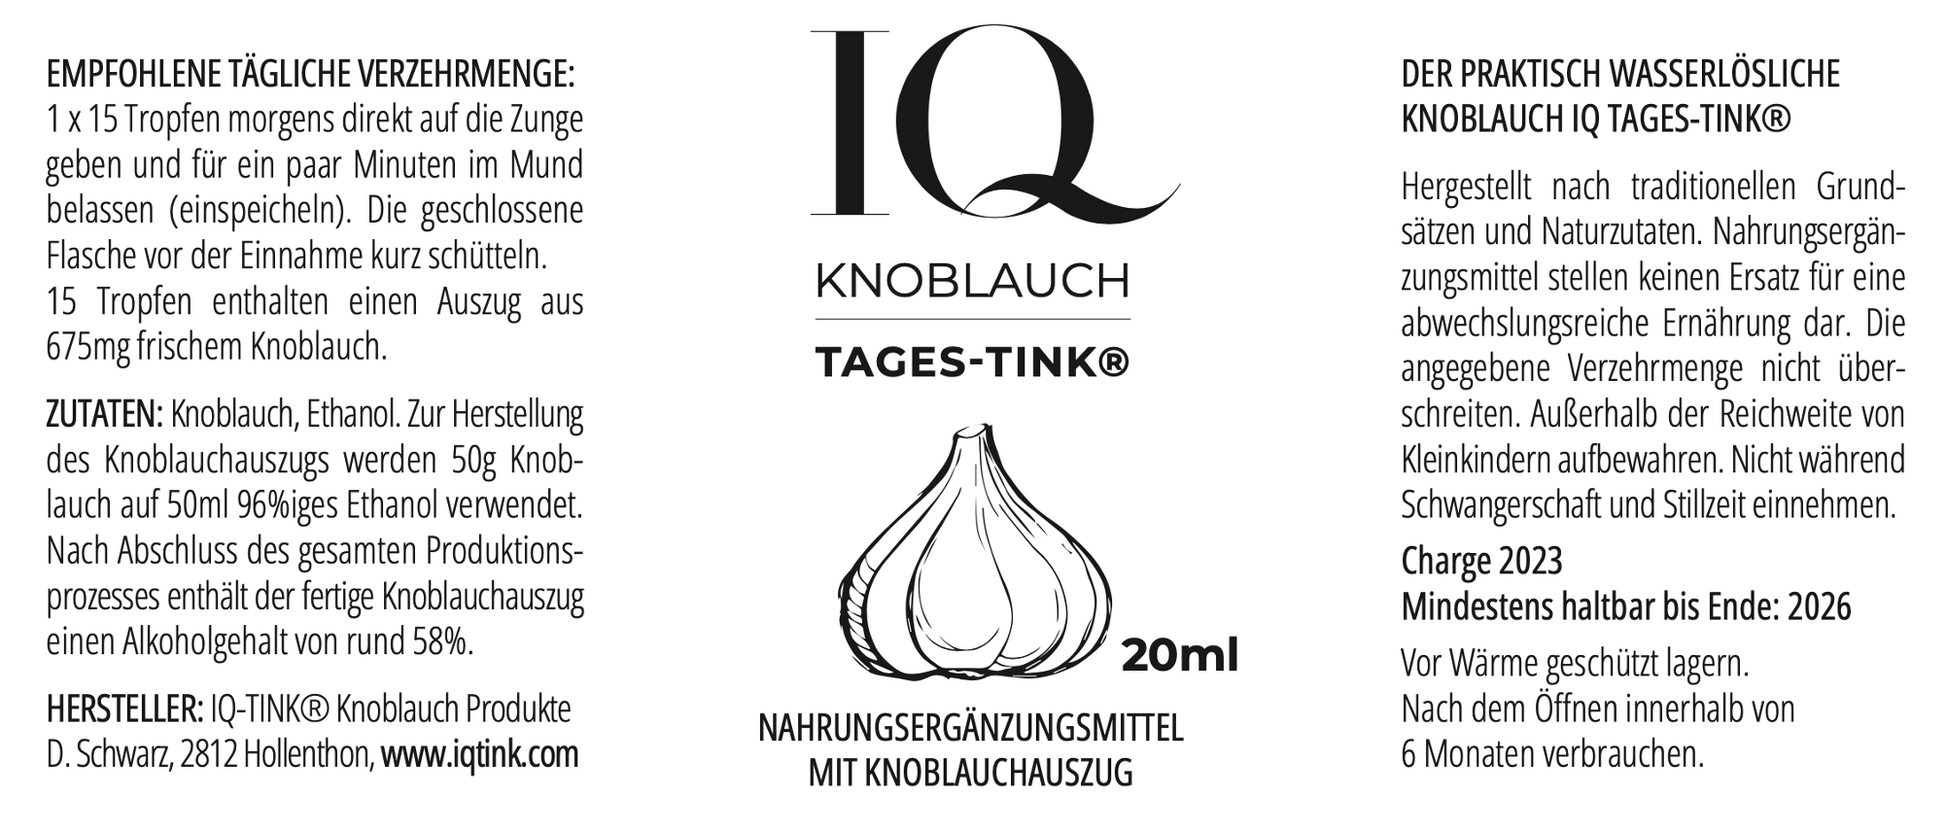  IQ-TINK.com - Der erstmals praktisch wasserlösliche Knoblauch Auszug mit einzigartiger Wirkung!